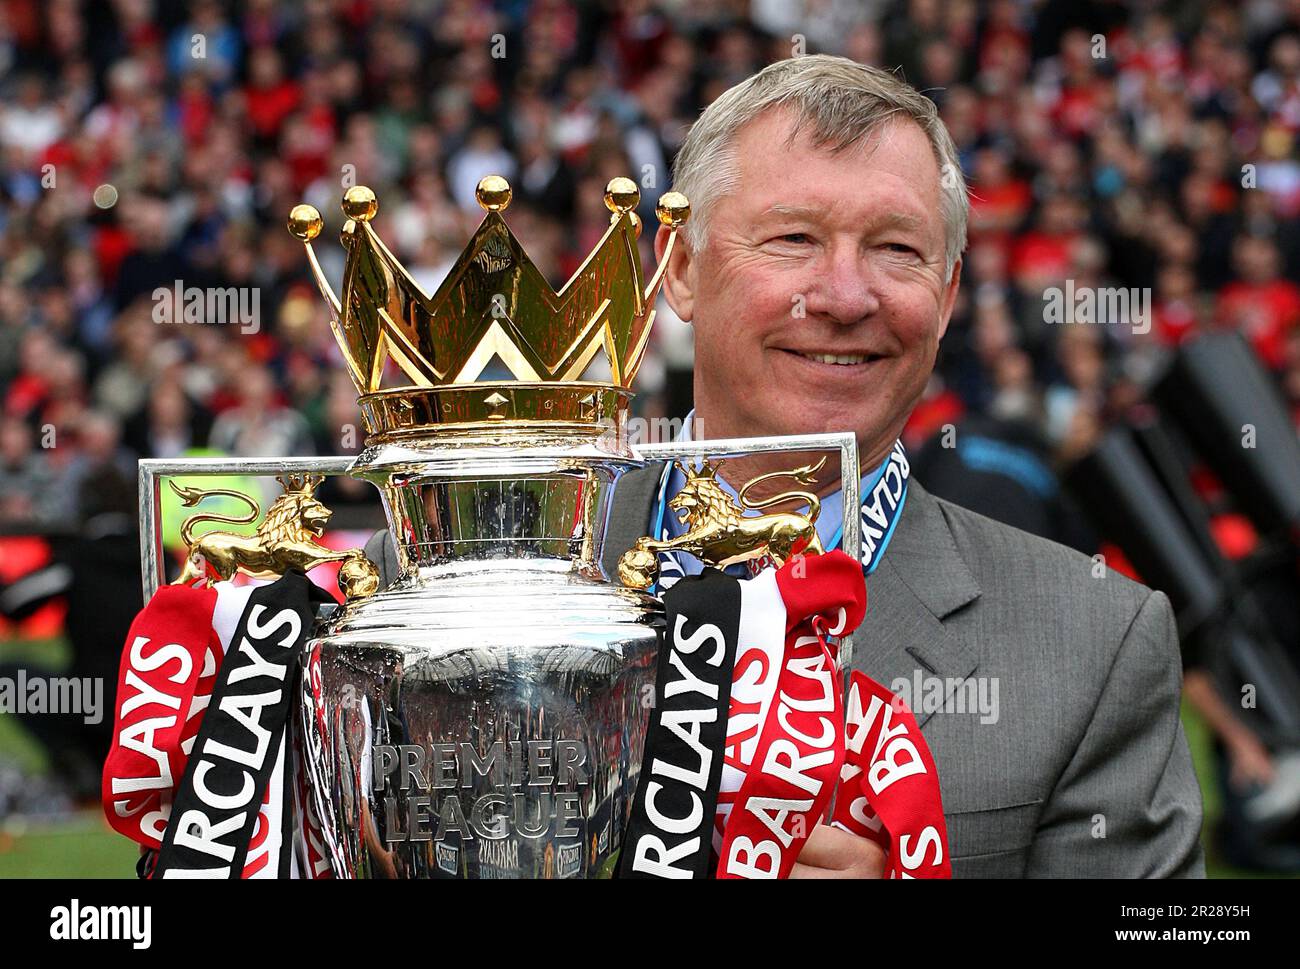 Dateifoto vom 16.-05-2009 von Manchester United Manager Sir Alex Ferguson hebt die Trophäe der Barclays Premier League. United gewann die Premier League in fünf der letzten 10 Jahre seines Führungspersonals und erreichte damit insgesamt 13 Titel. Das umfasste eine dreifache Folge von 2006-07 bis 2008-09, bevor er den Titel 2010-11 hinzufügte und 2012-13 mit einem anderen abzeichnete. Ausgabedatum: Donnerstag, 18. Mai 2023. Stockfoto